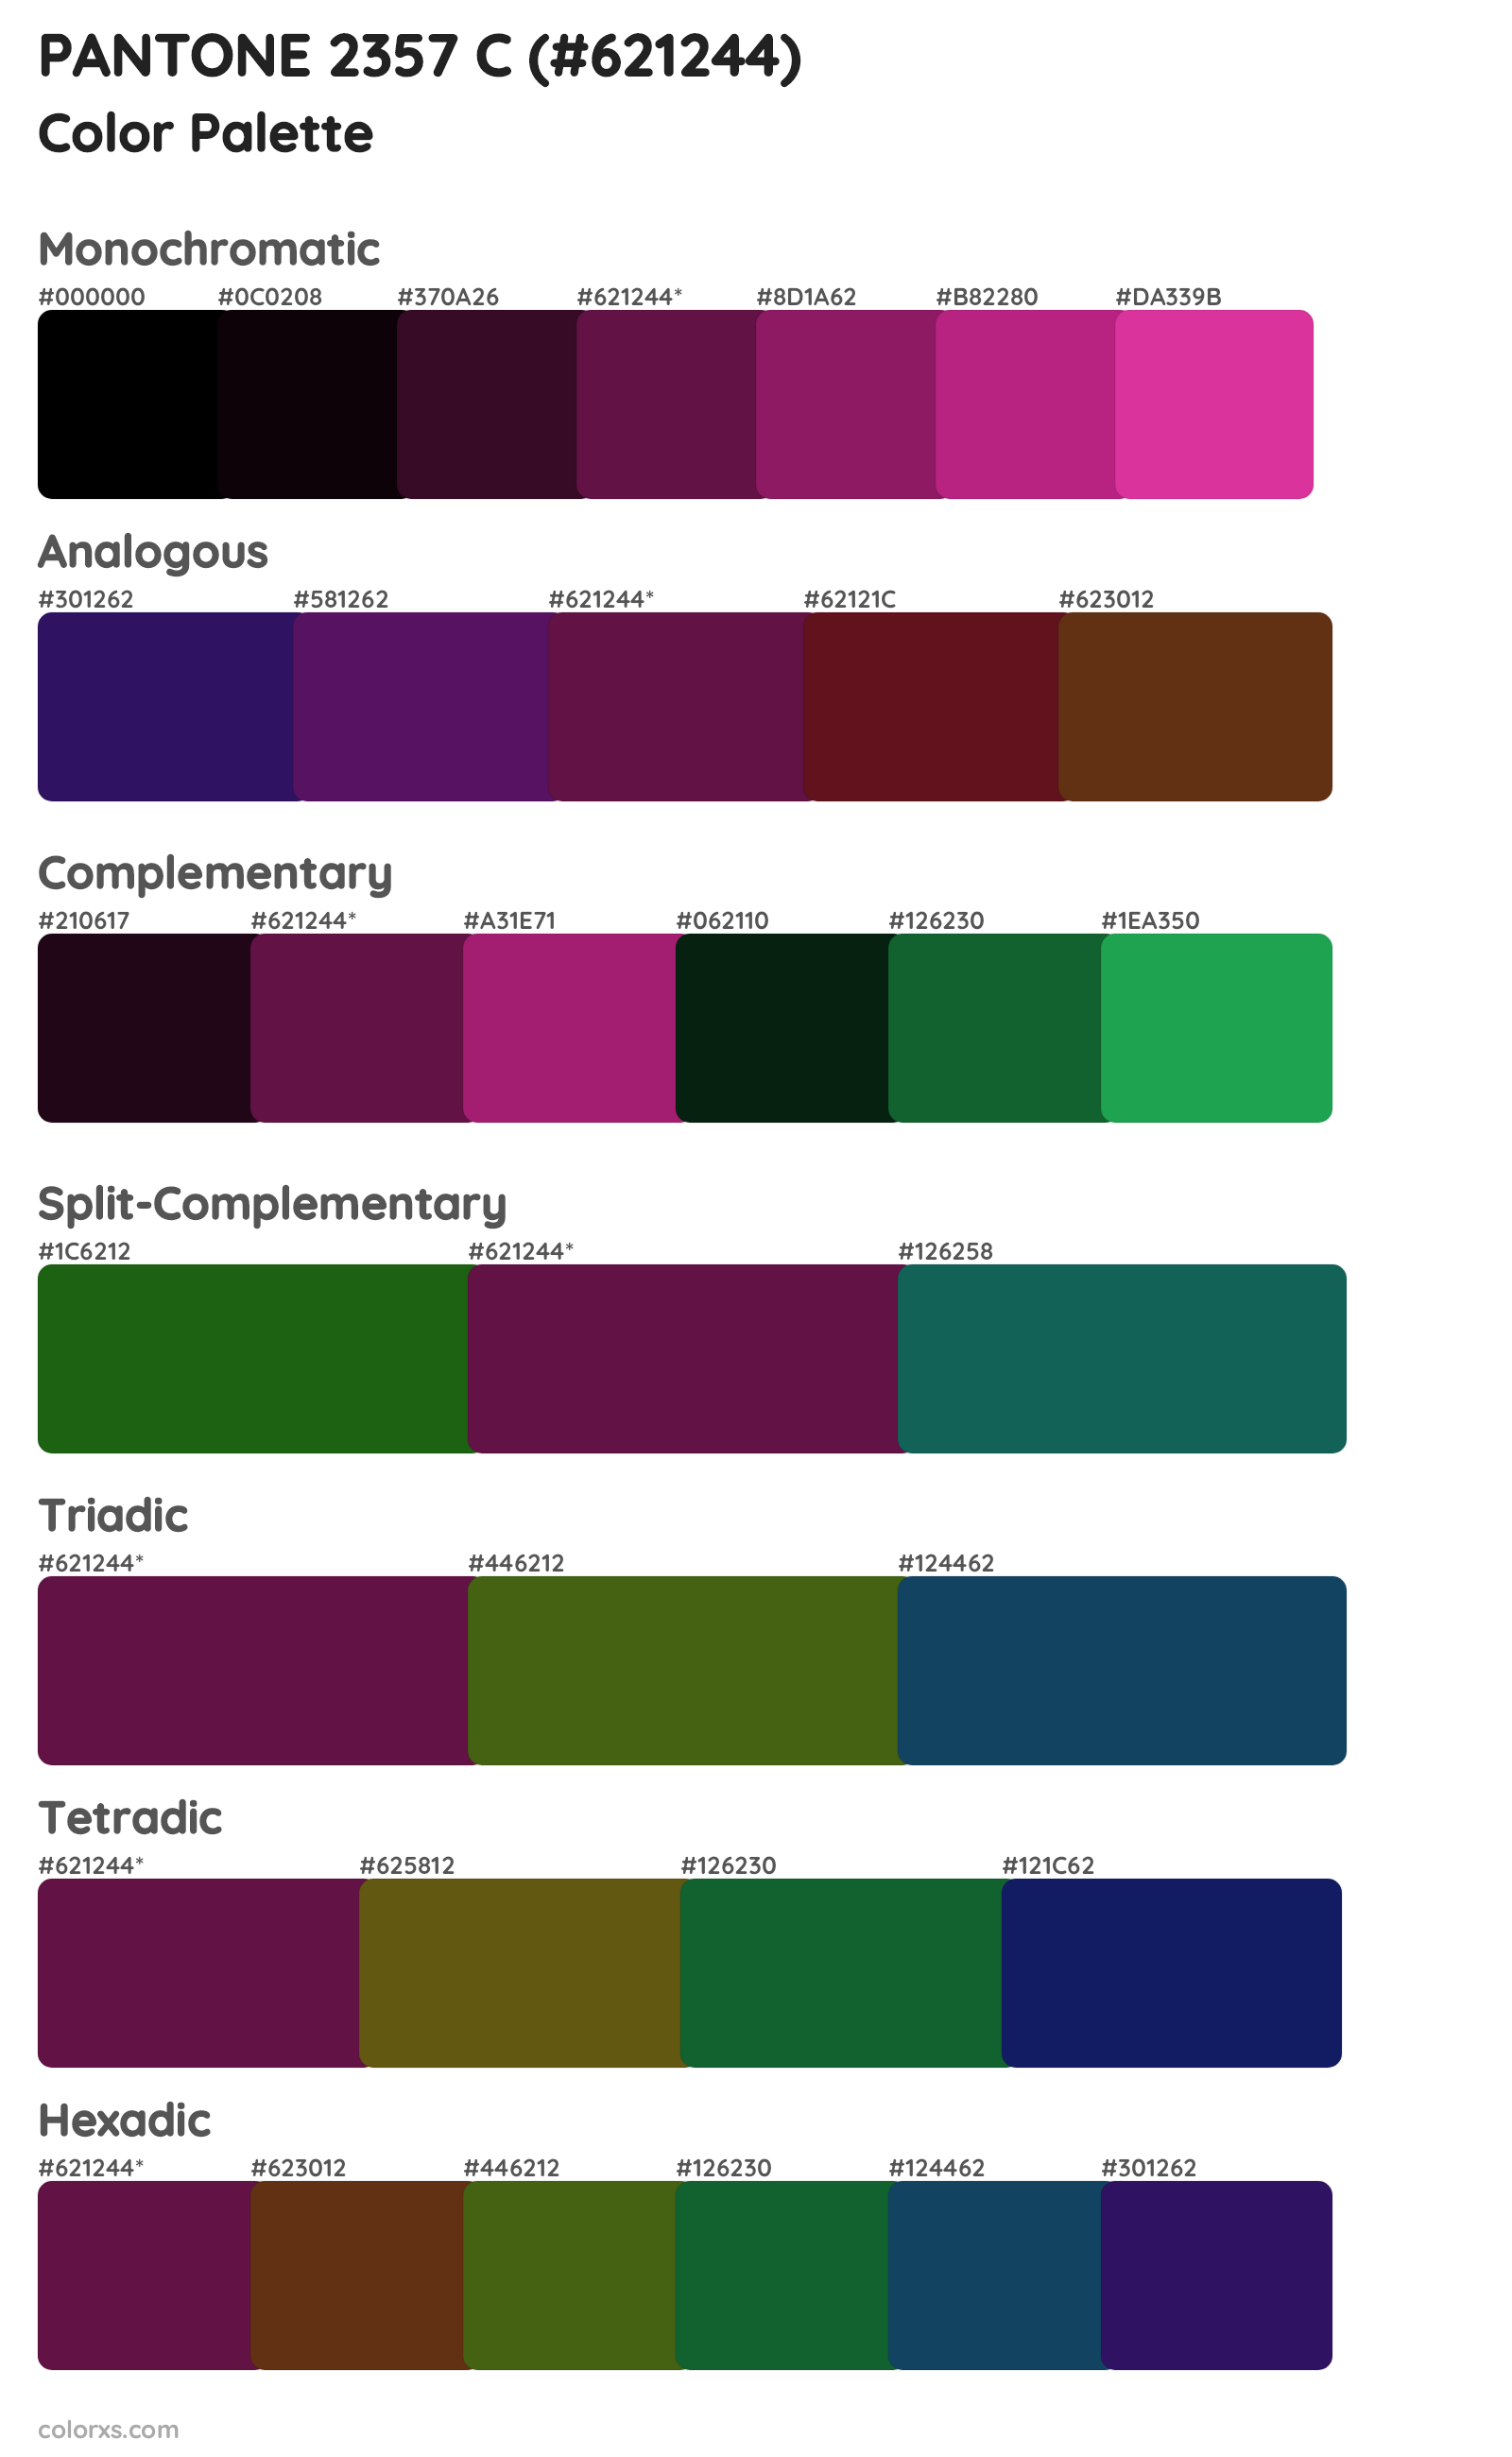 PANTONE 2357 C Color Scheme Palettes